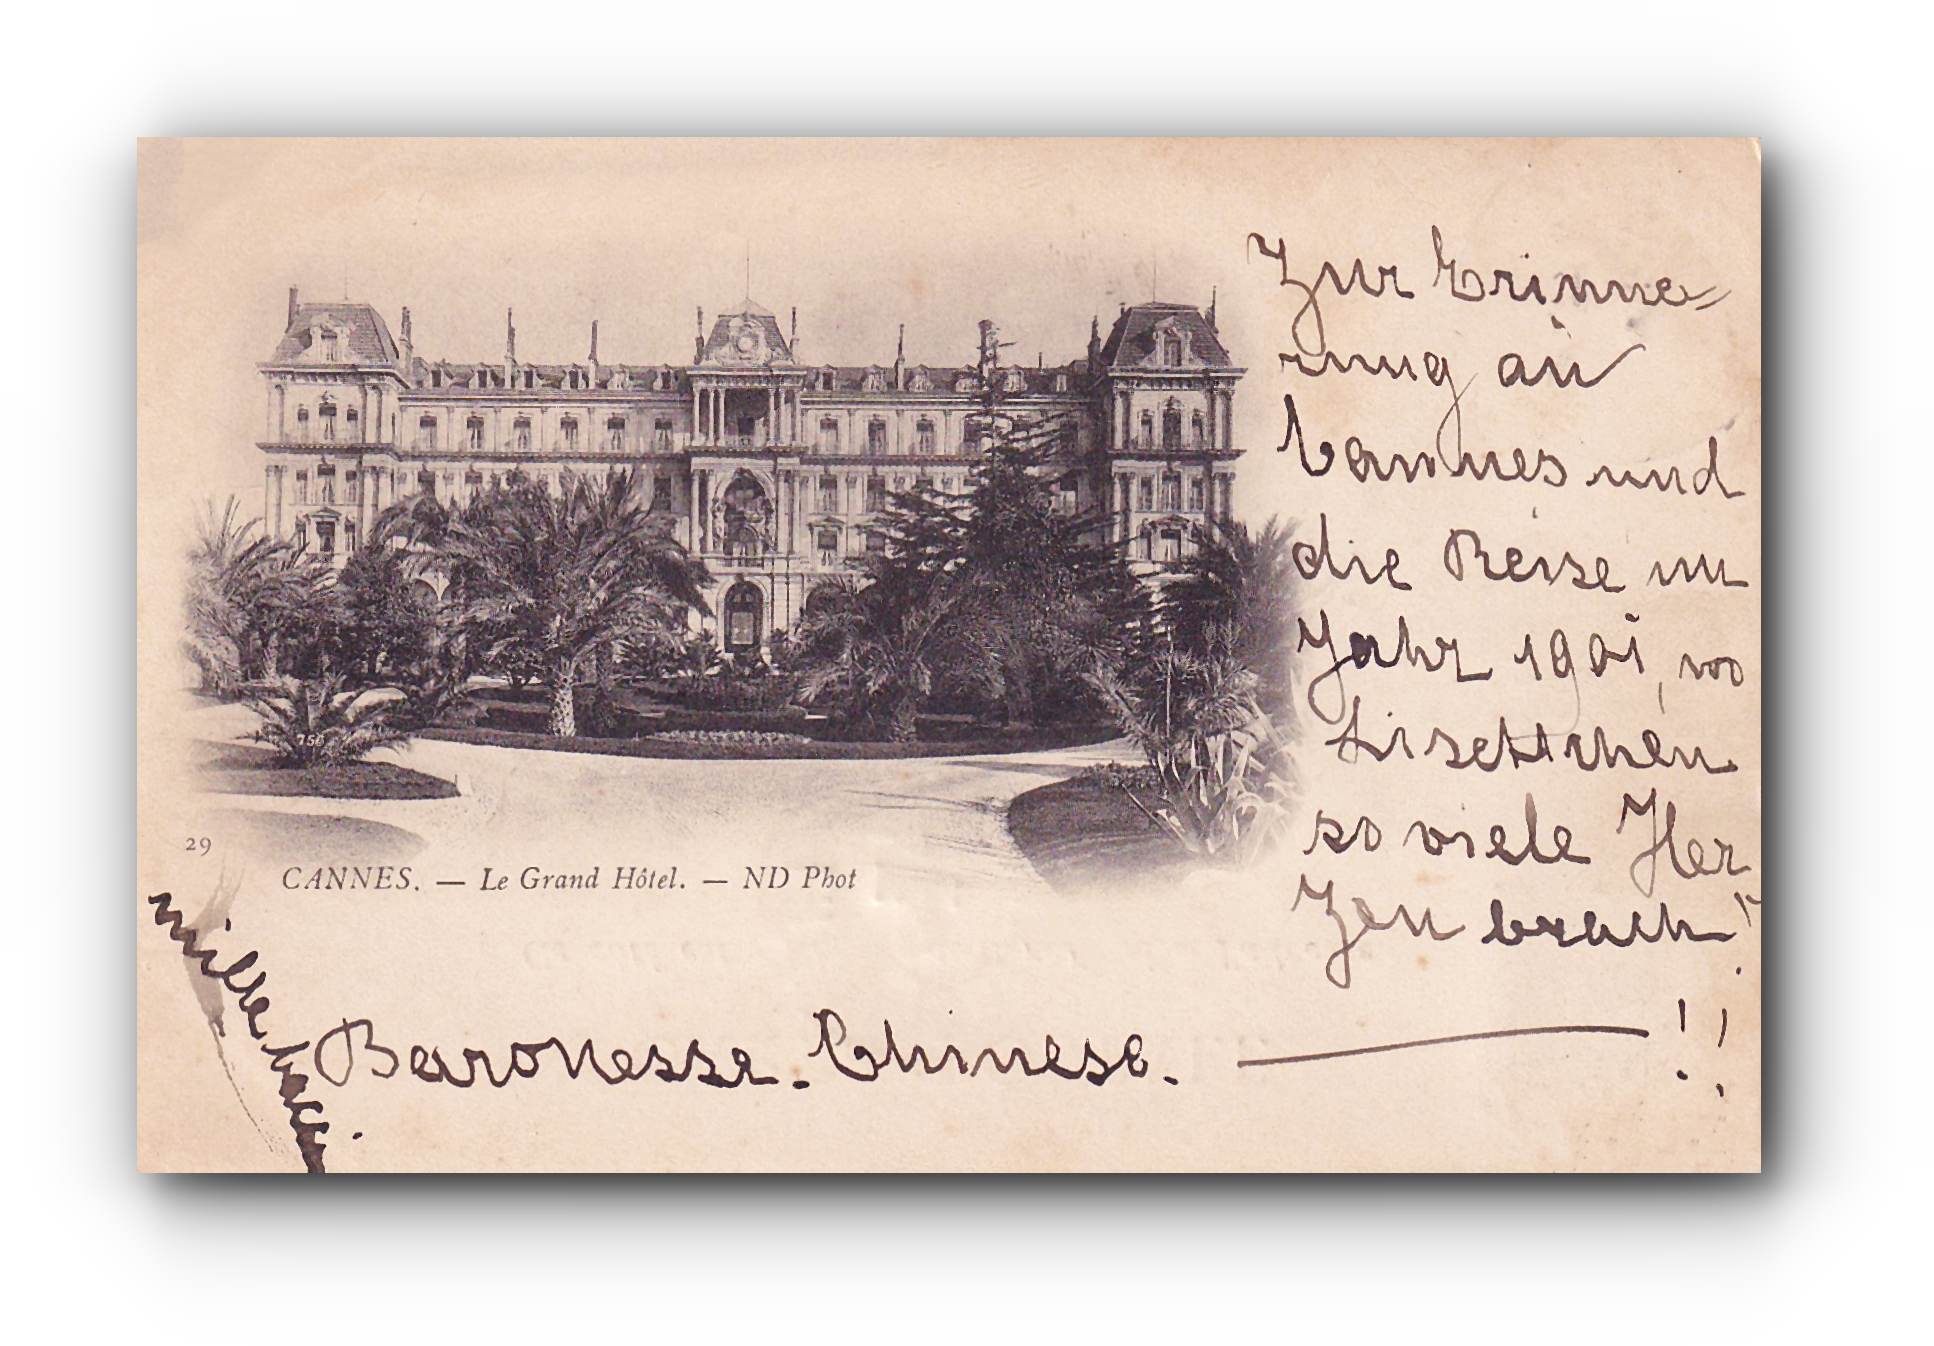 - CANNES - Le Grand Hôtel - 06.05.1901 -